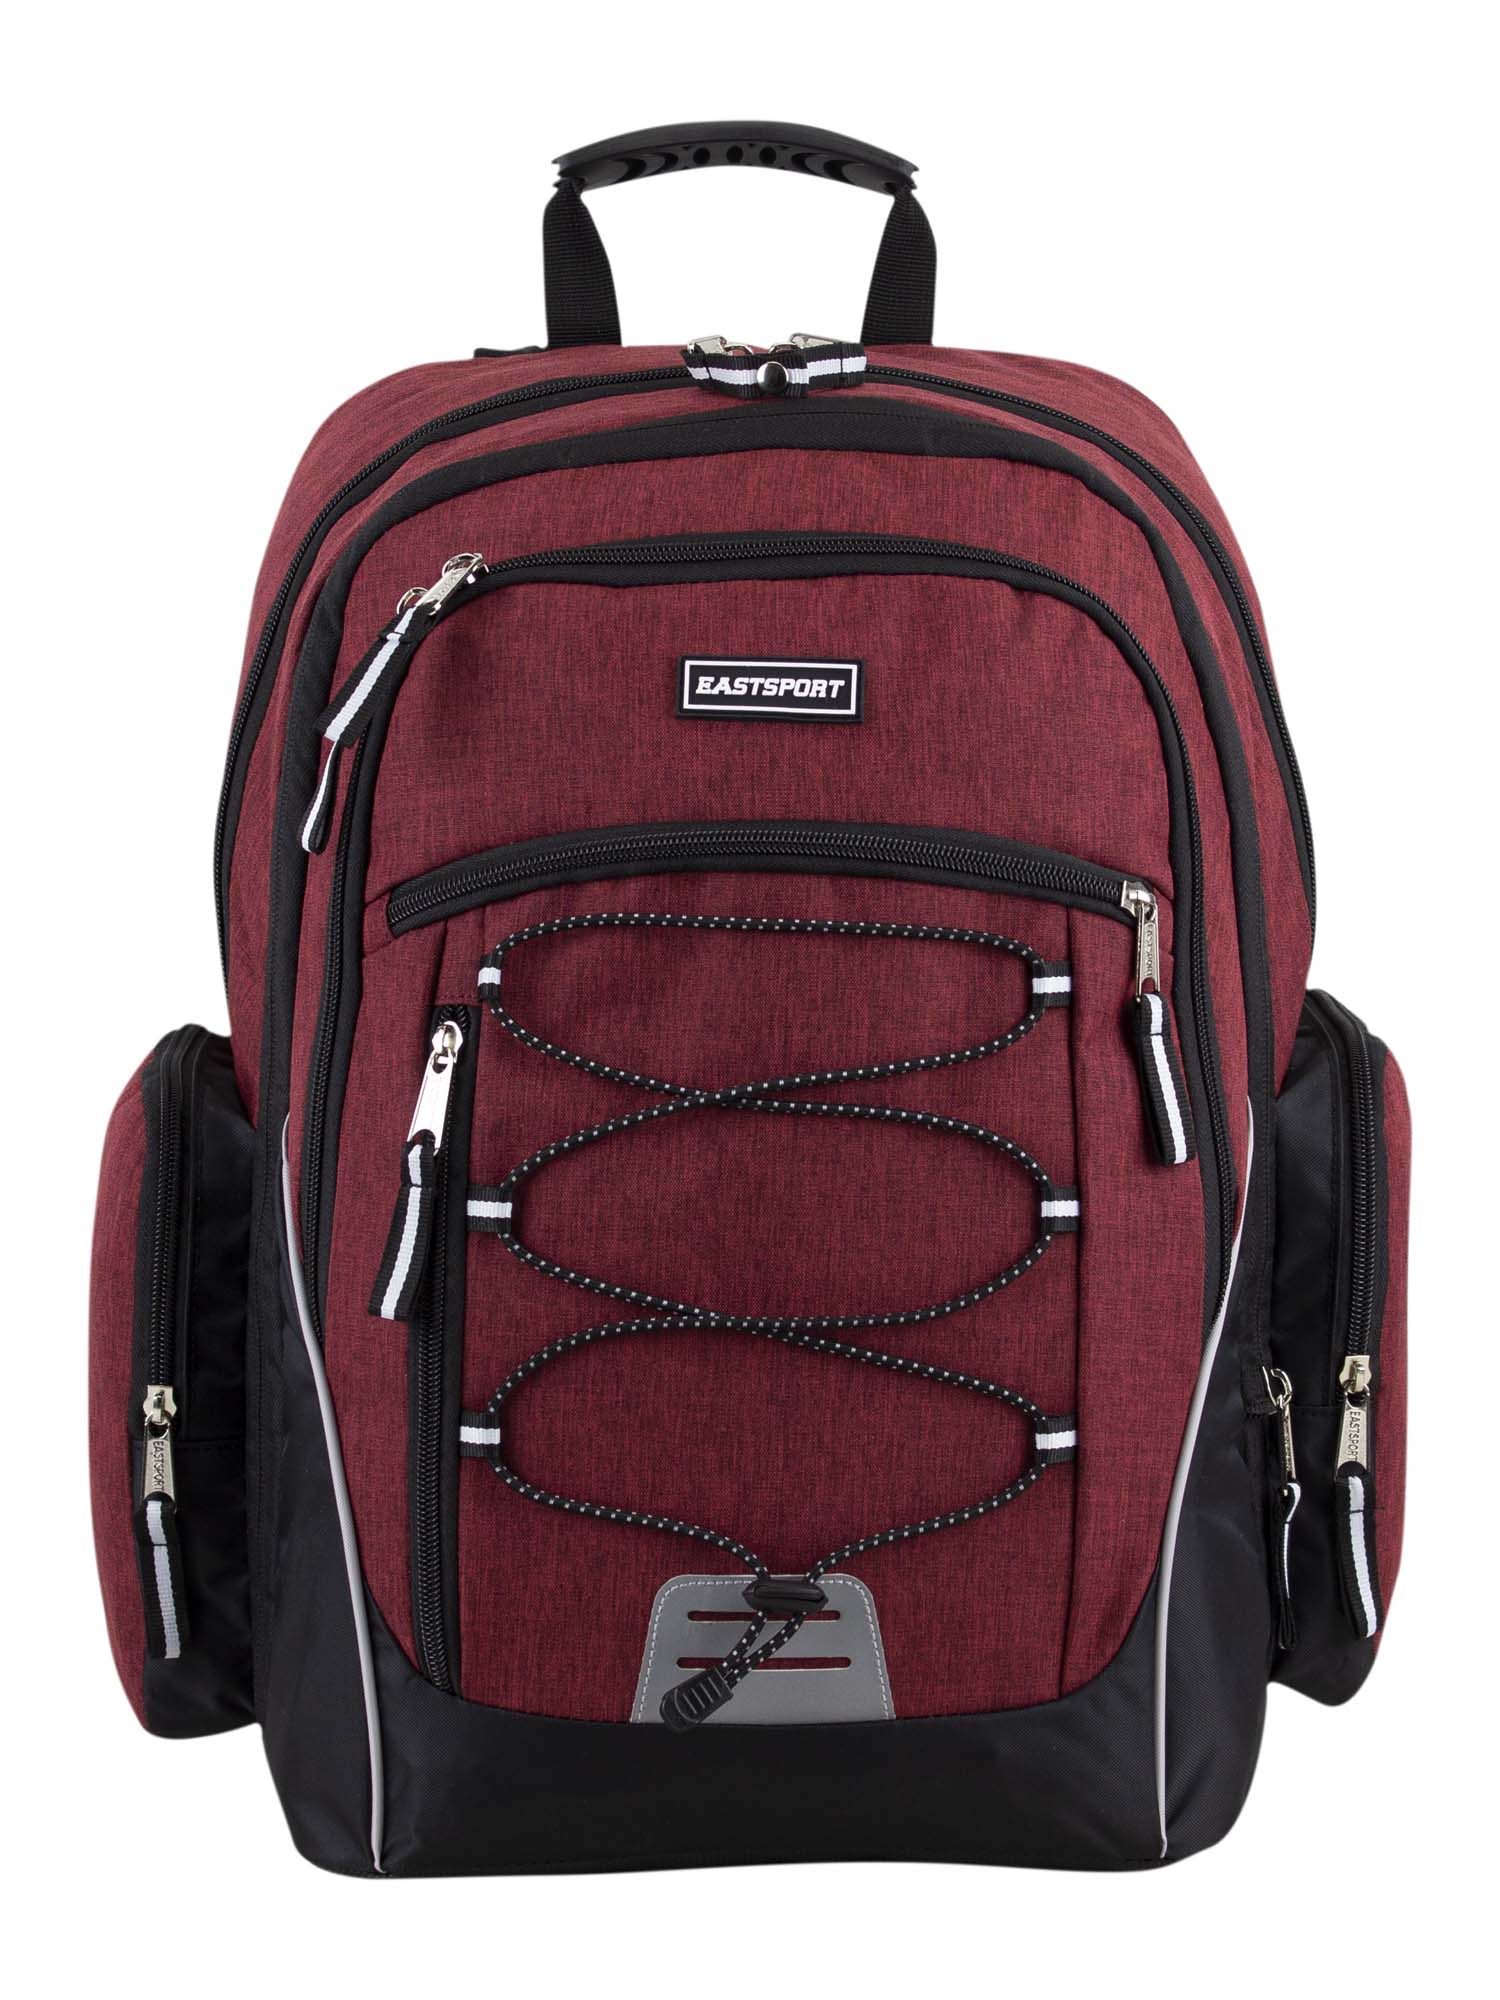 Eastsport Optimus Backpack, Maroon - image 5 of 7